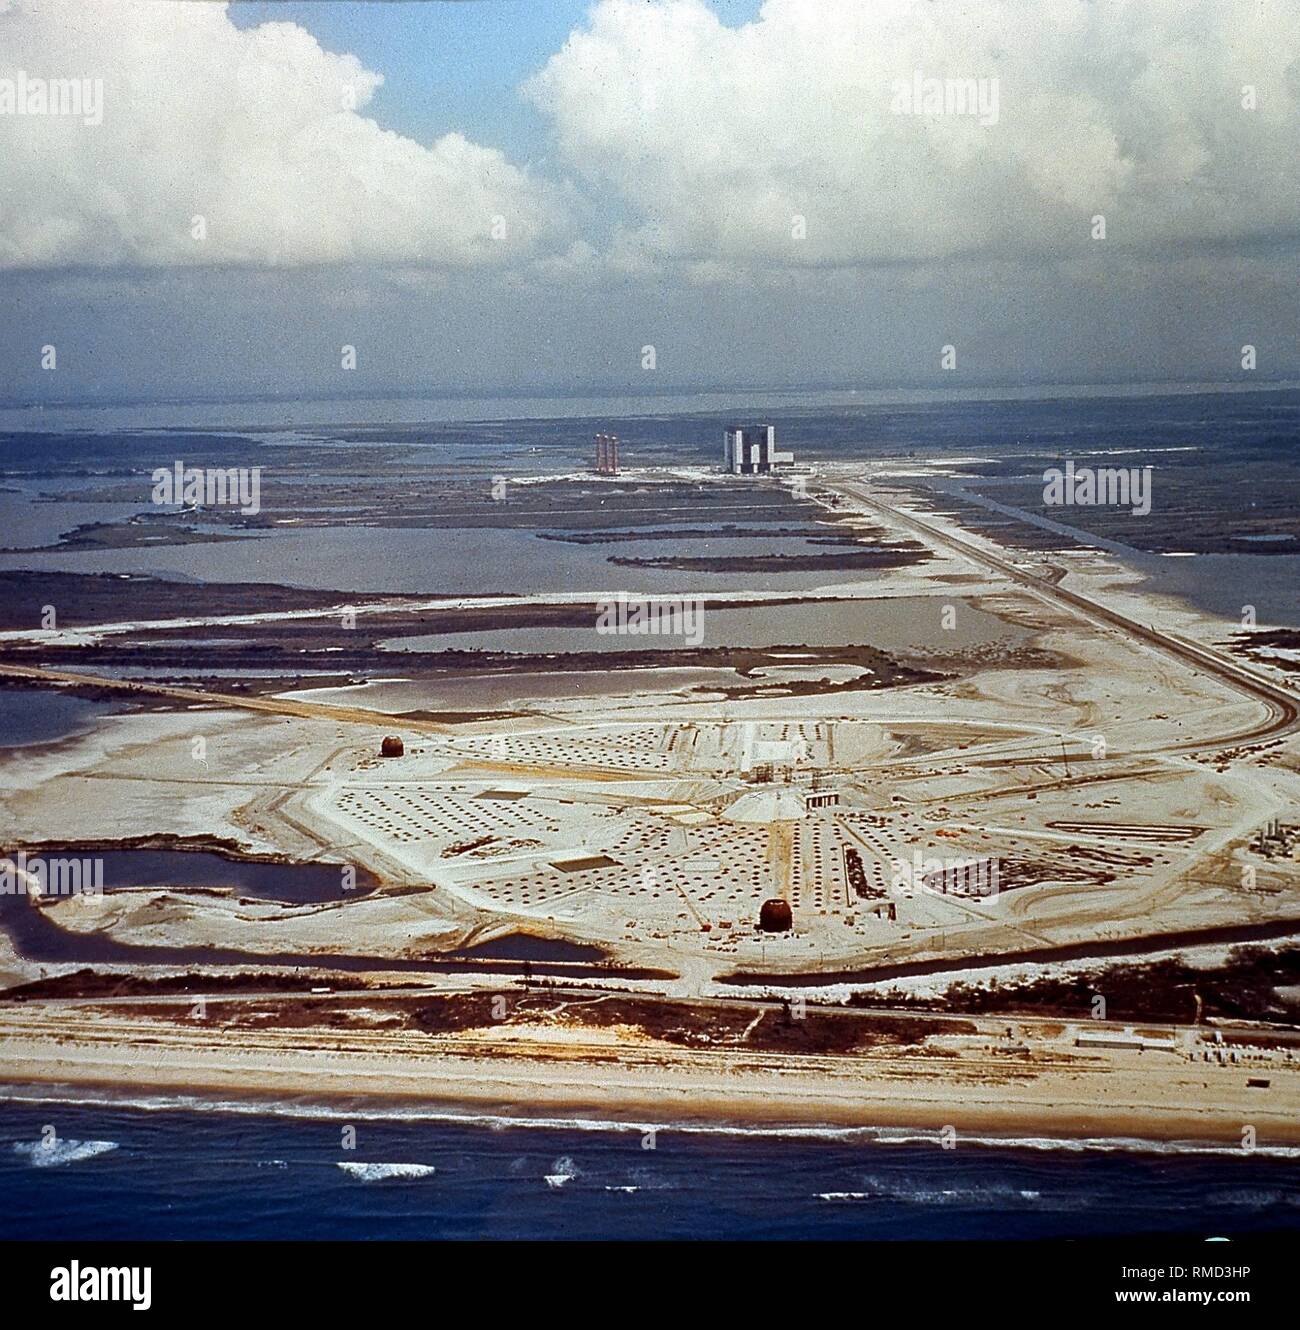 Panoramica del lancio di un sito di lancio presso la John F. Kennedy Space Center. Sullo sfondo la assembly hall per navicelle spaziali e a sinistra accanto ad essa, tre mobile lancio del razzo pattini. Foto non datata, probabilmente negli anni ottanta. Foto Stock